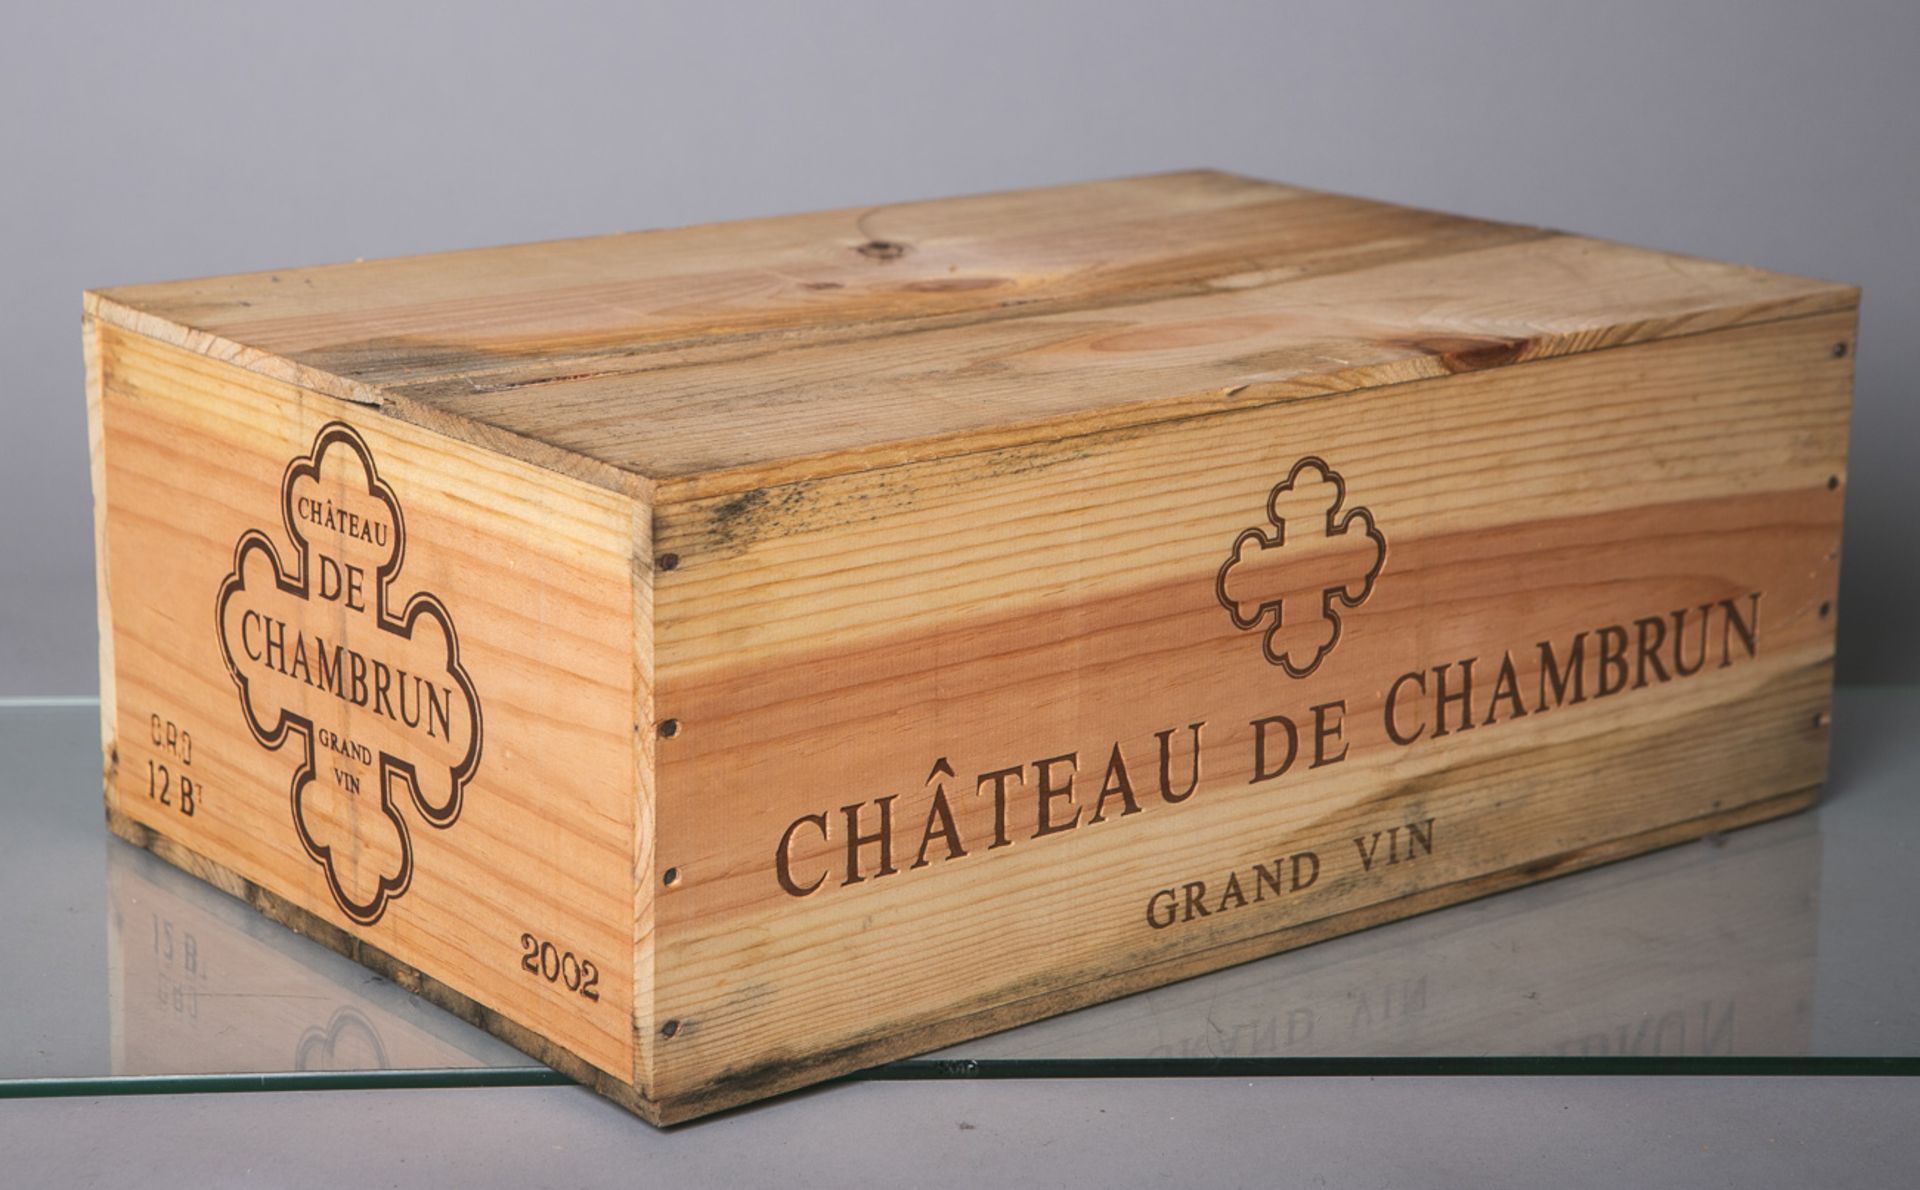 12 Flaschen von Chateau de Chambrun Grand-vin (2002), Rotwein, je 0,75 L, in orig.Holzbox. Im